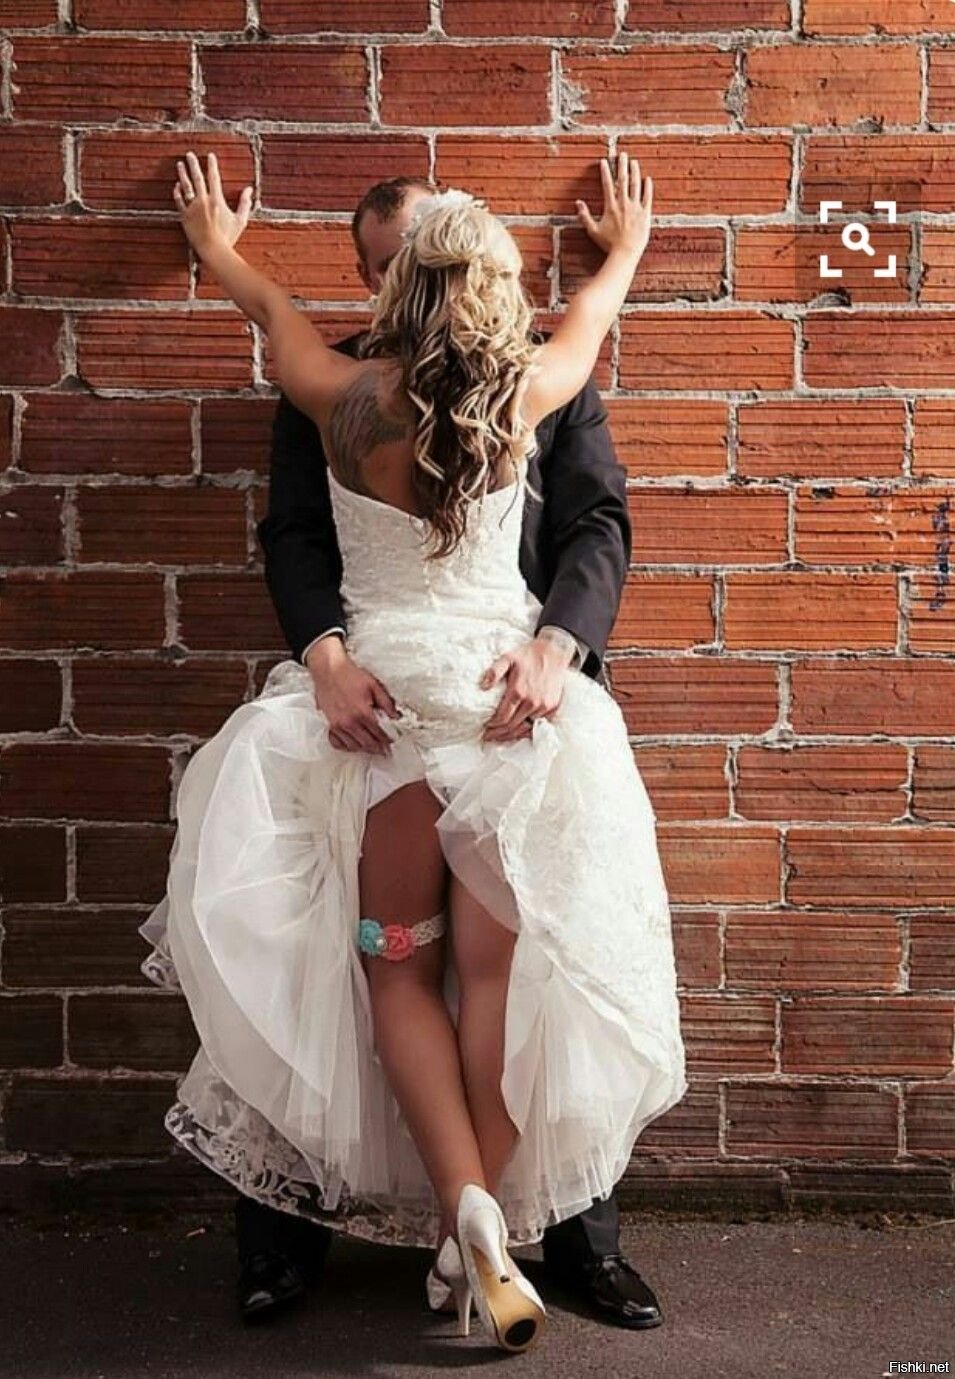 Провокационная невеста и ее лучшая подруга весело с будущим мужем ебутся перед свадьбой